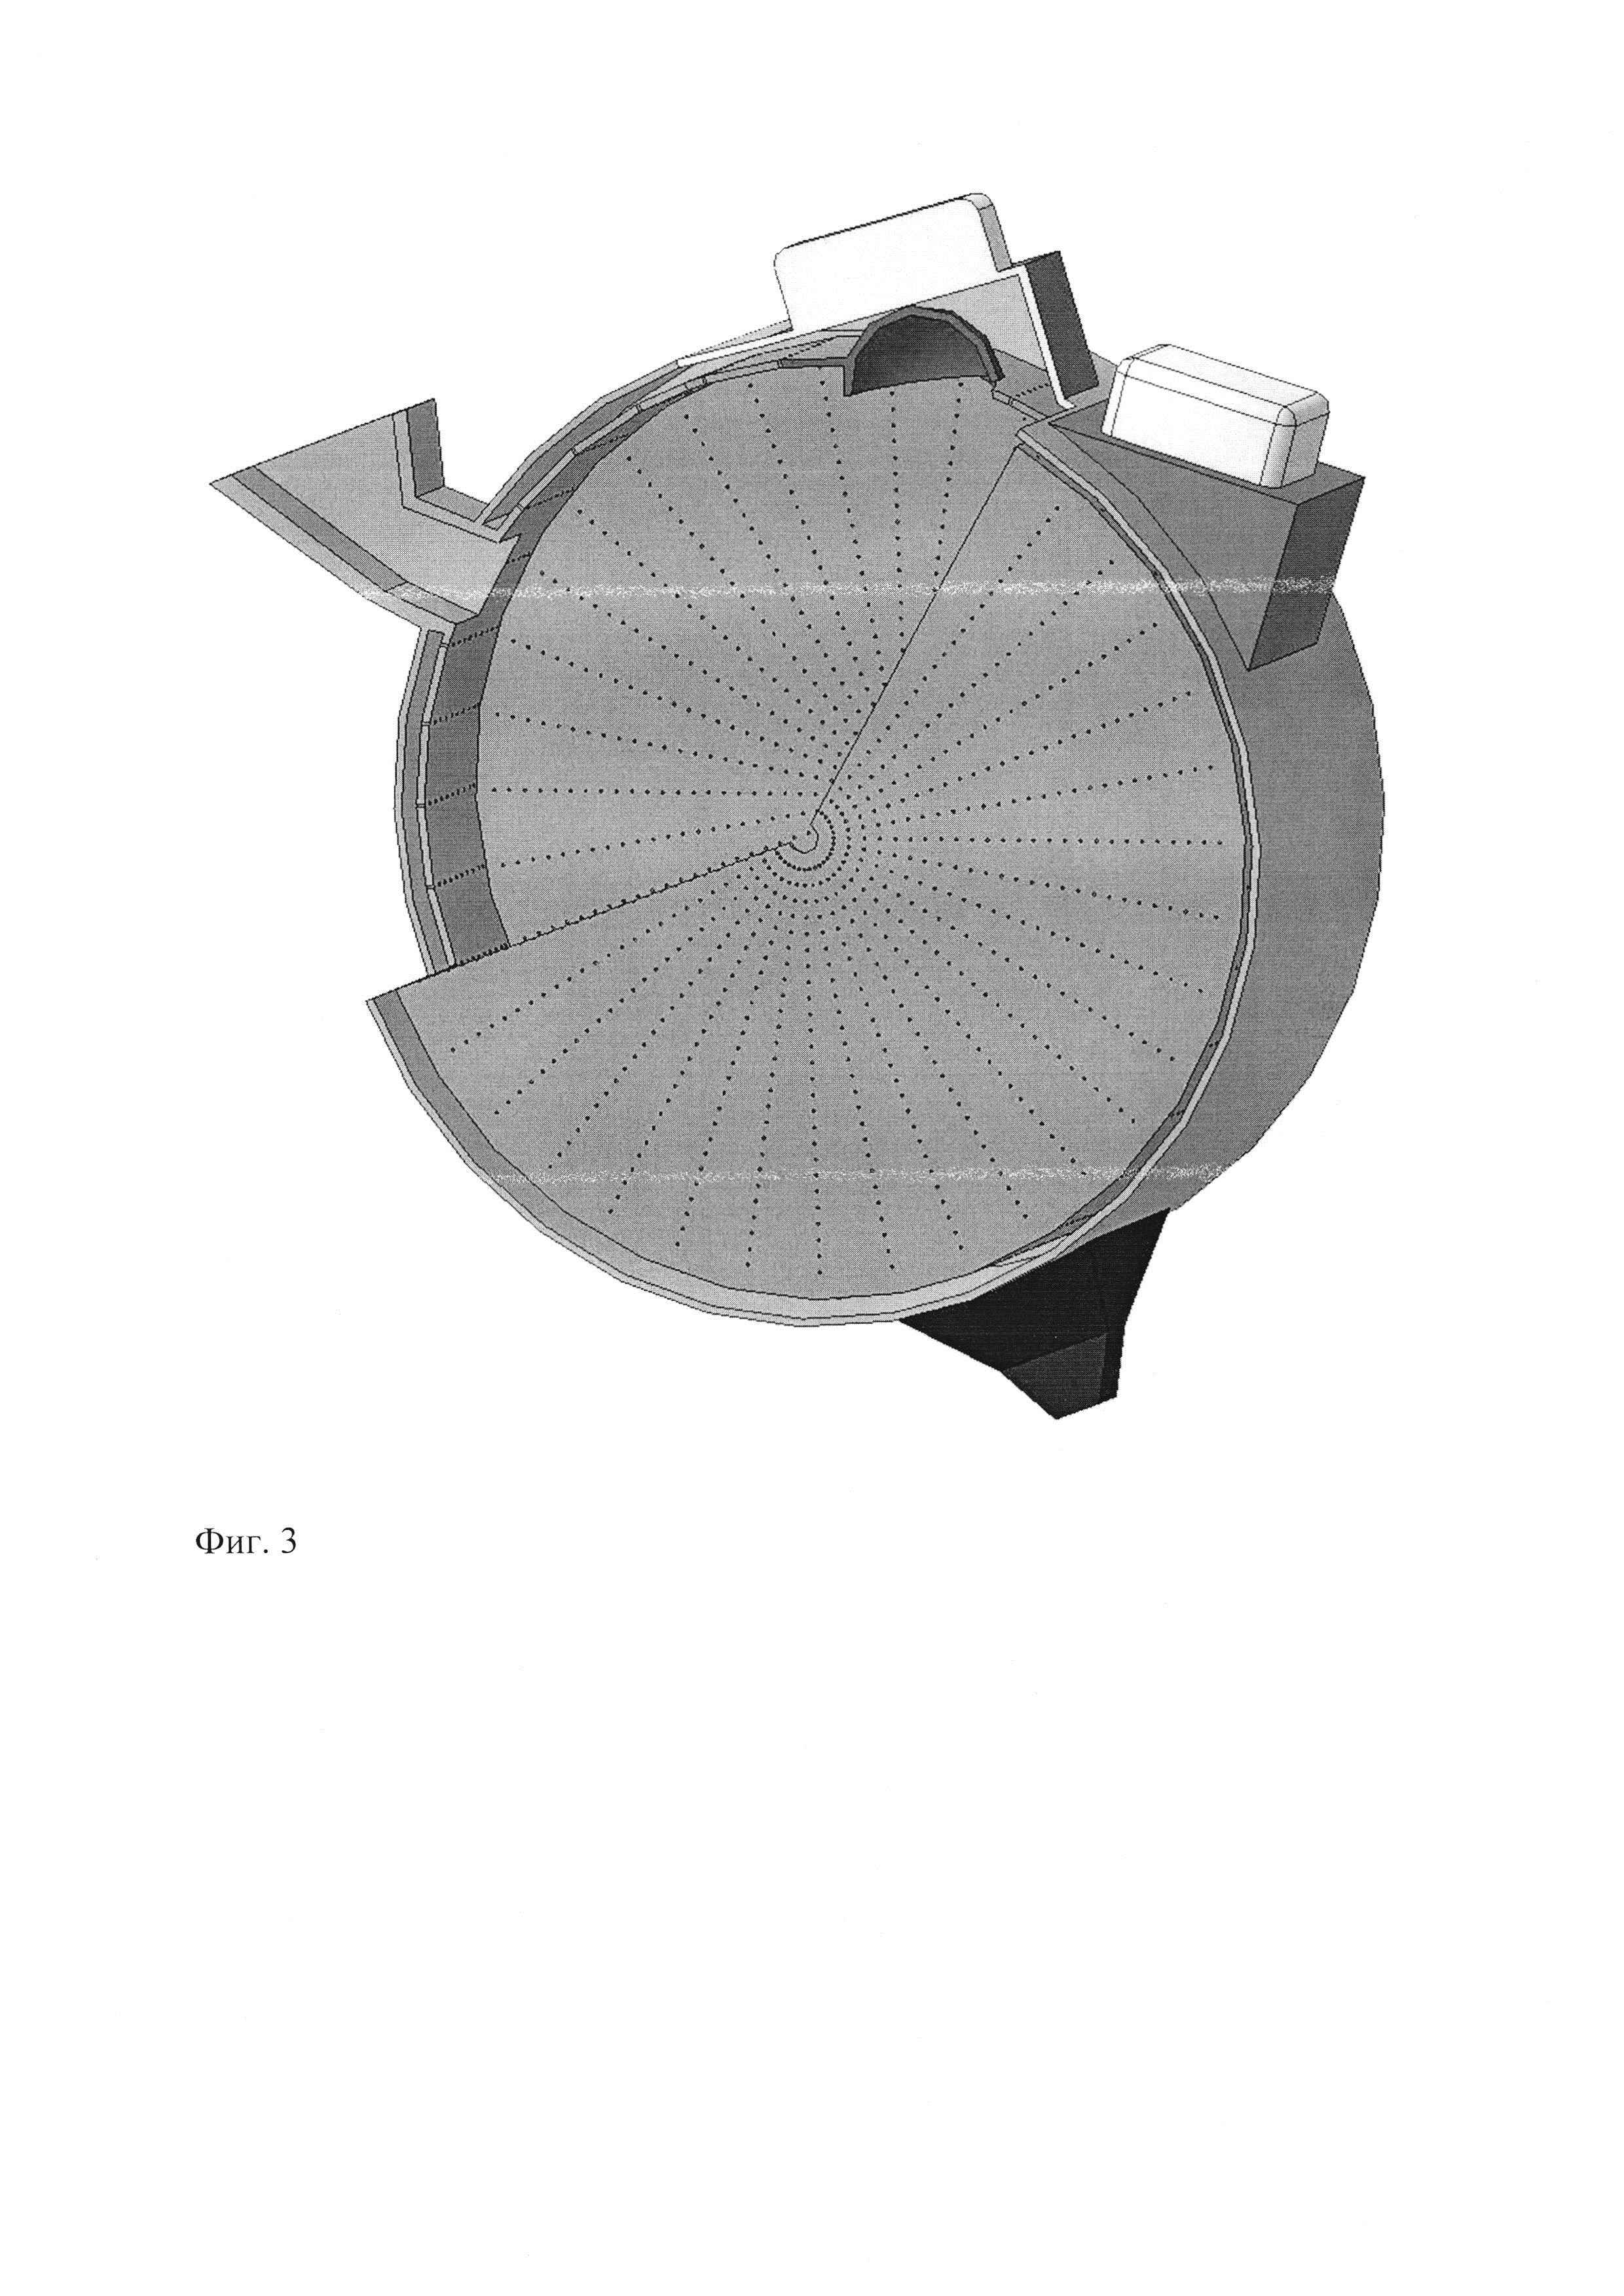 Сверхвысокочастотная установка с передвижными полусферами для термомеханического разрушения сырья